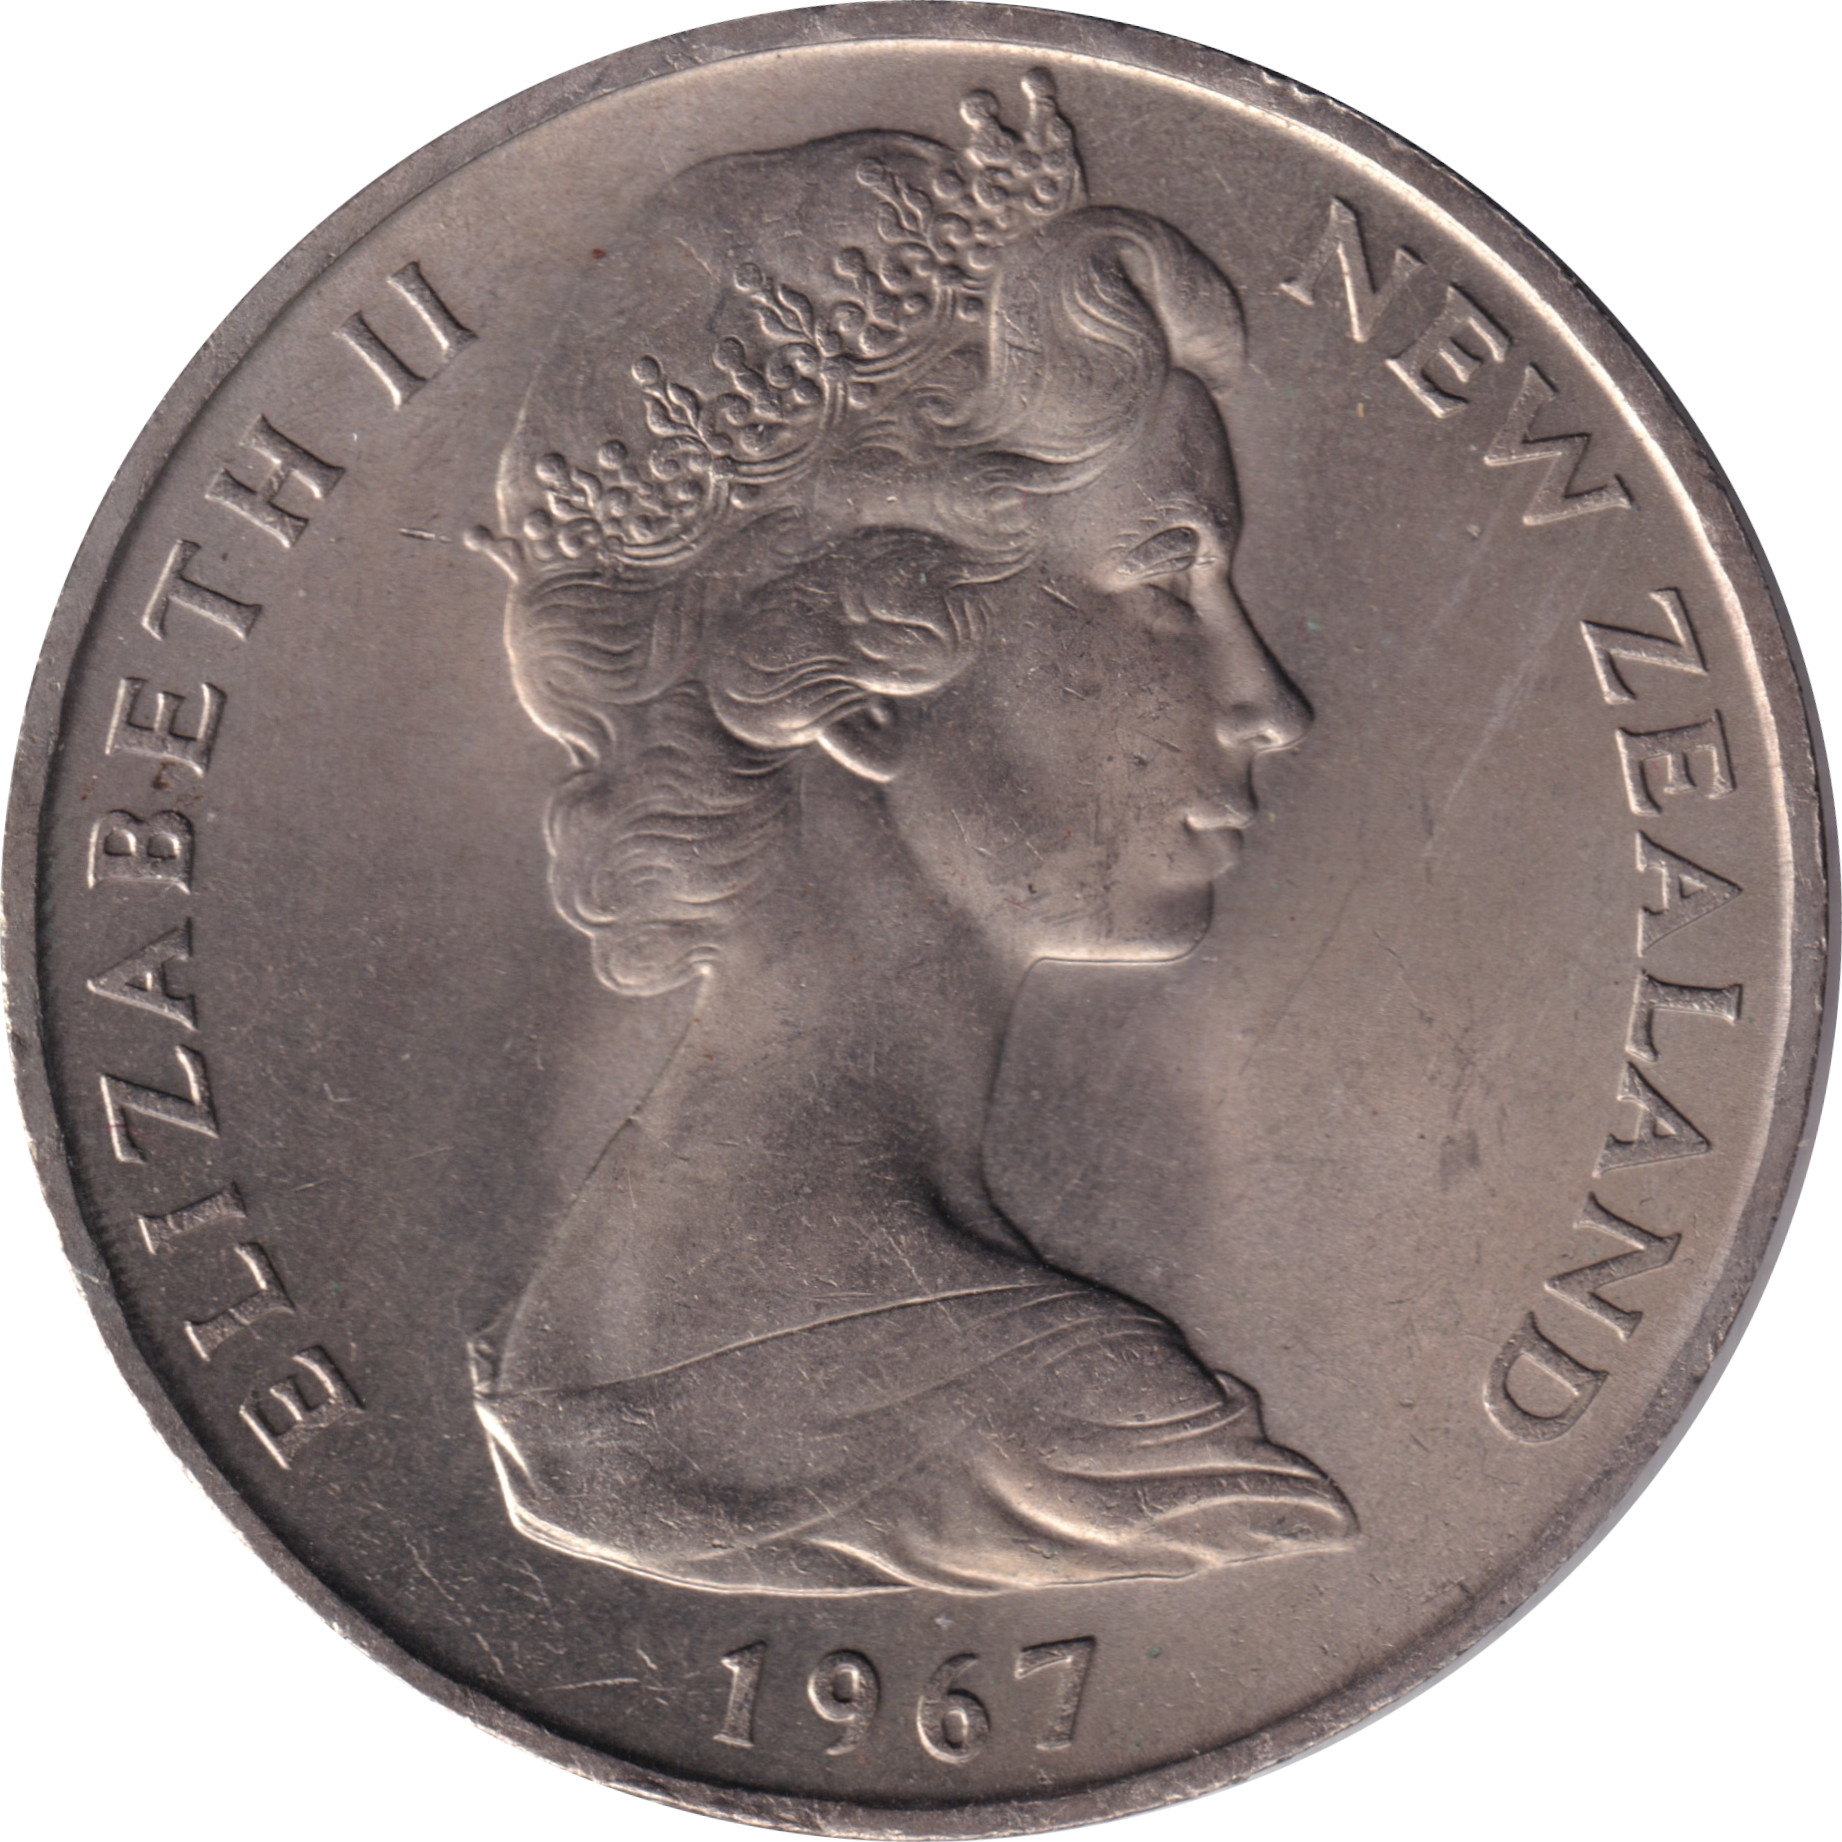 1 dollar - Elizabeth II - Young bust